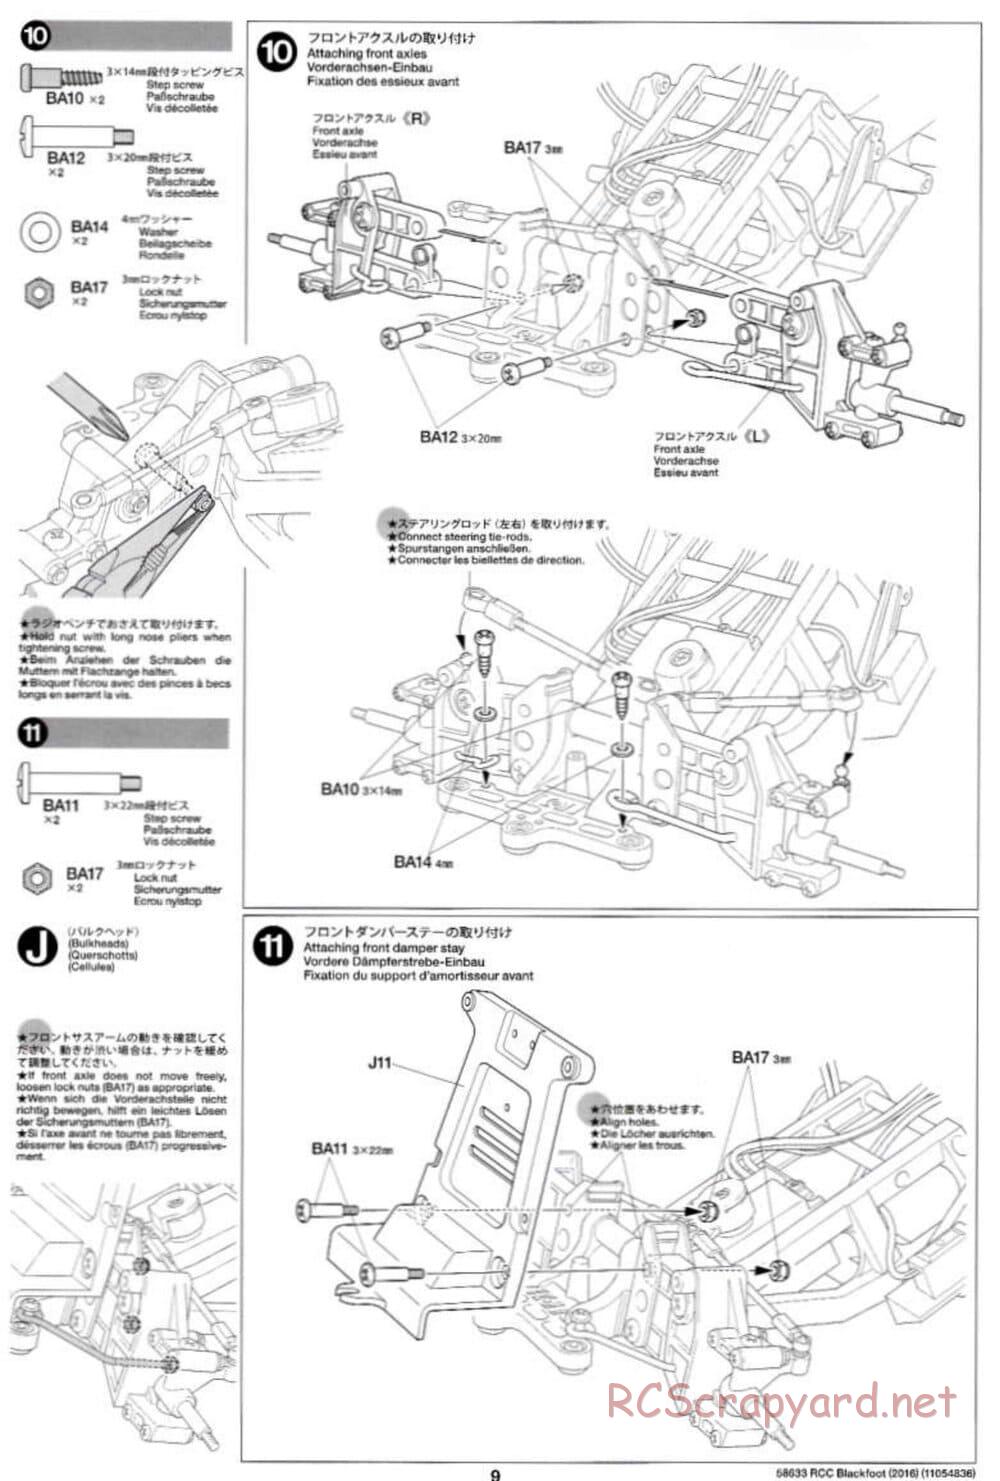 Tamiya - Blackfoot 2016 - ORV Chassis - Manual - Page 9